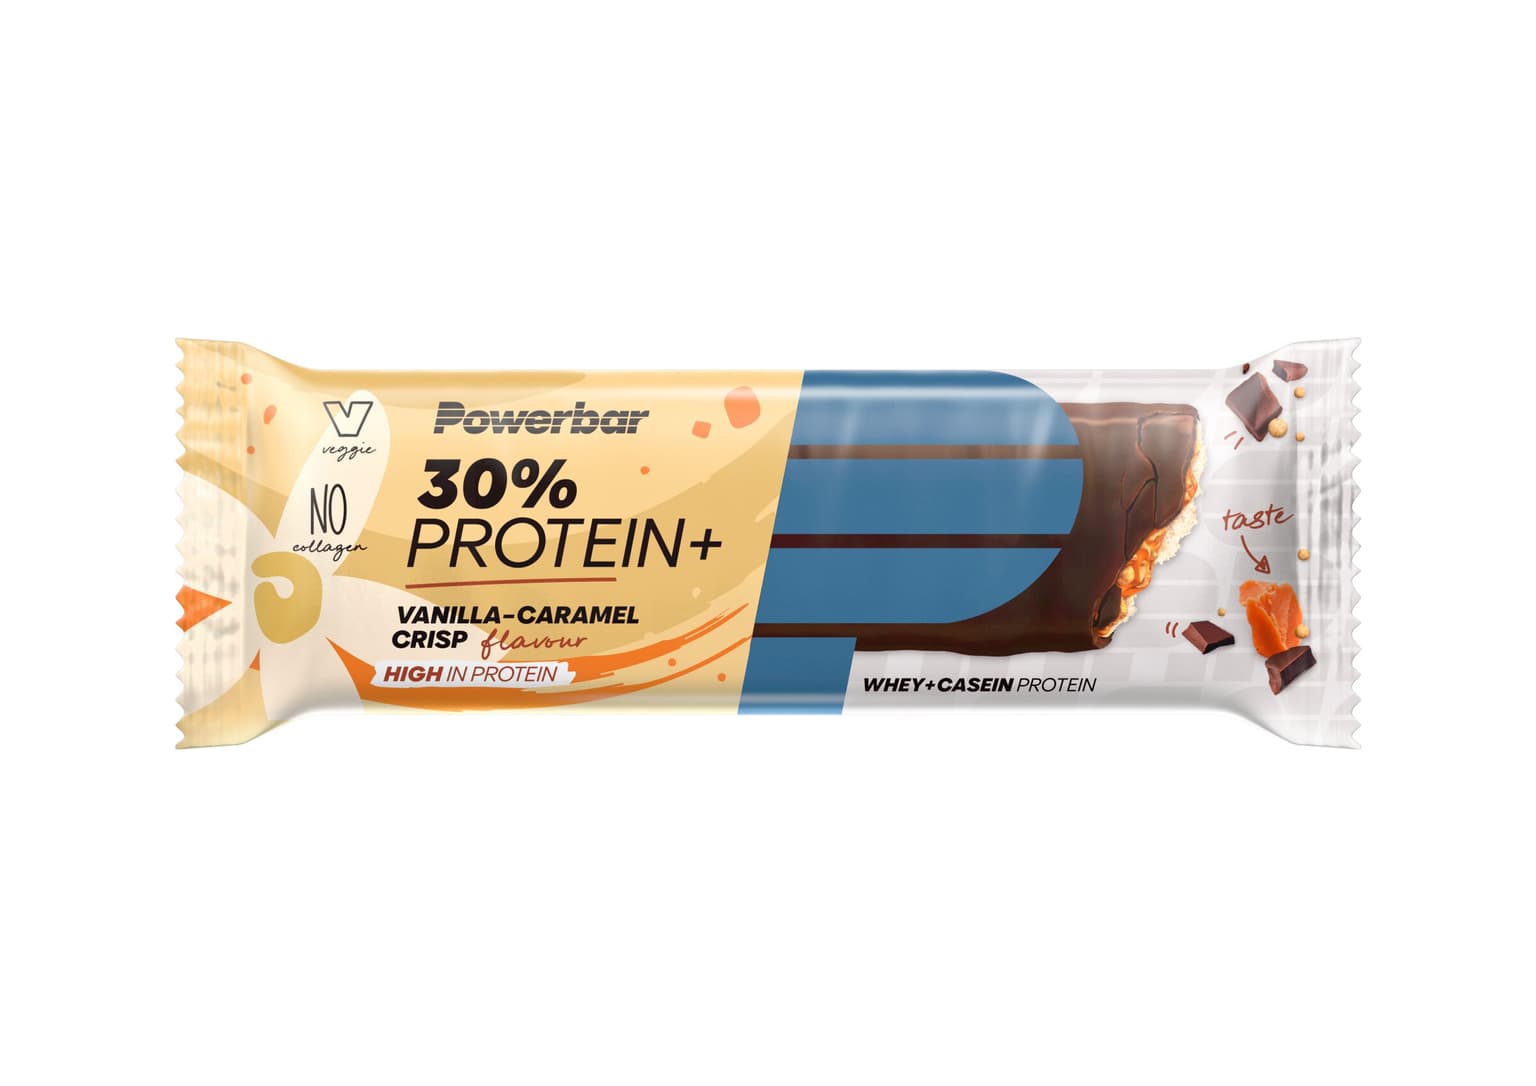 PowerBar PowerBar 30% Protein Plus Barre protéinée 1